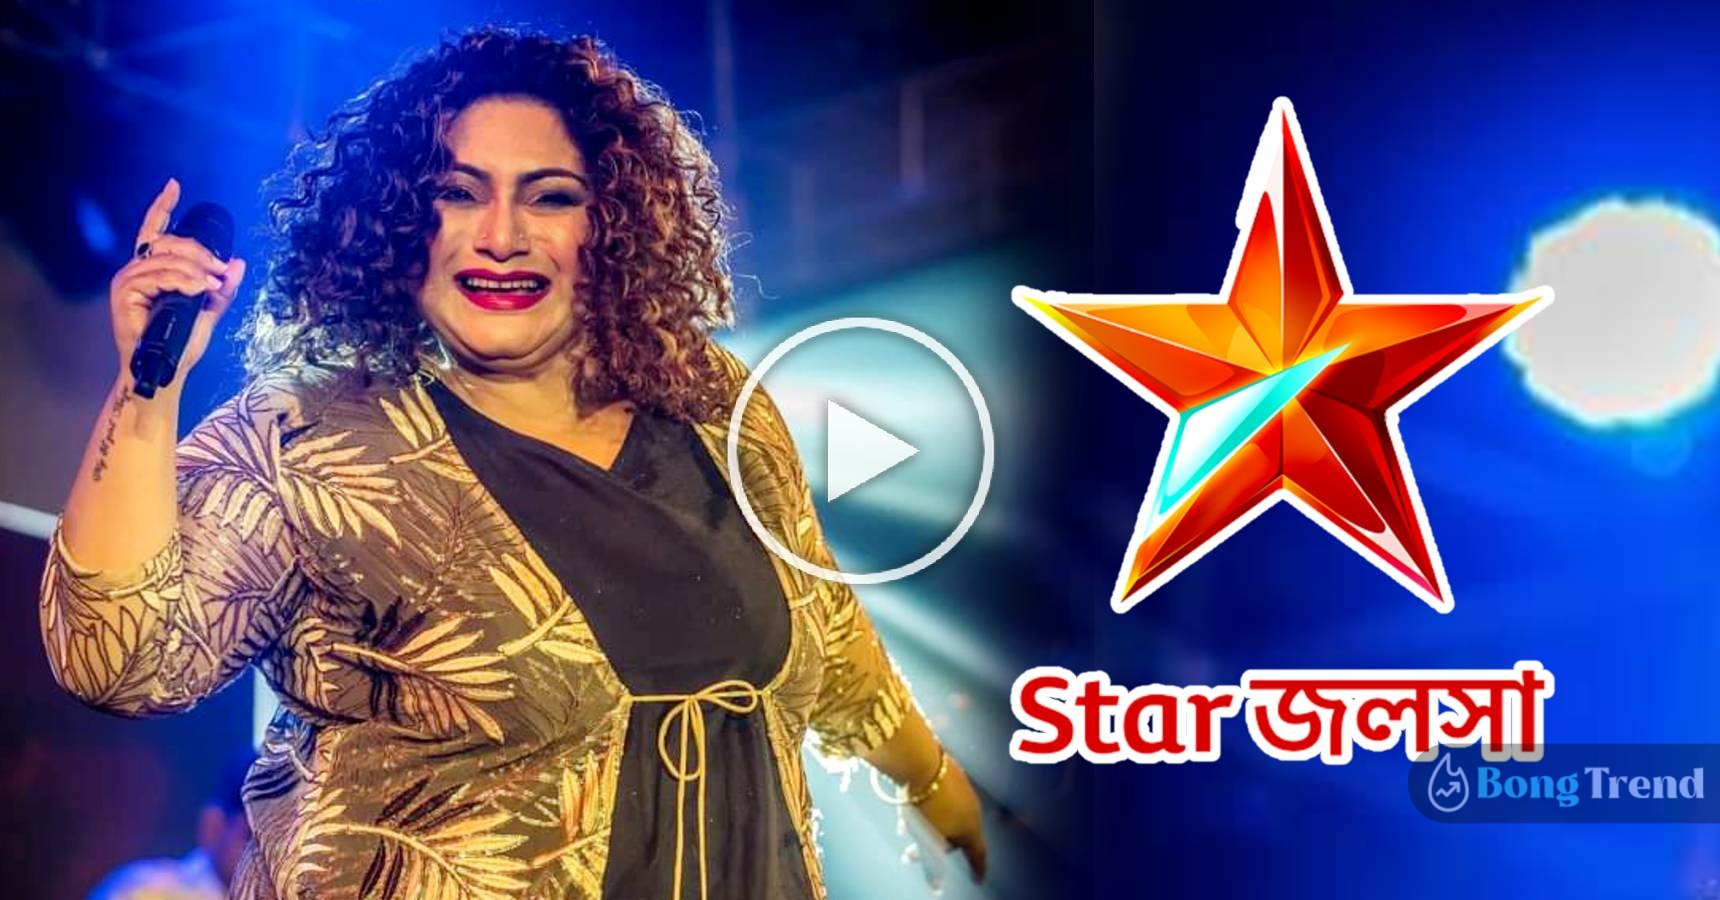 Famous singer Jojo has entered Star Jalsha’s serial Horogouri Pice Hotel